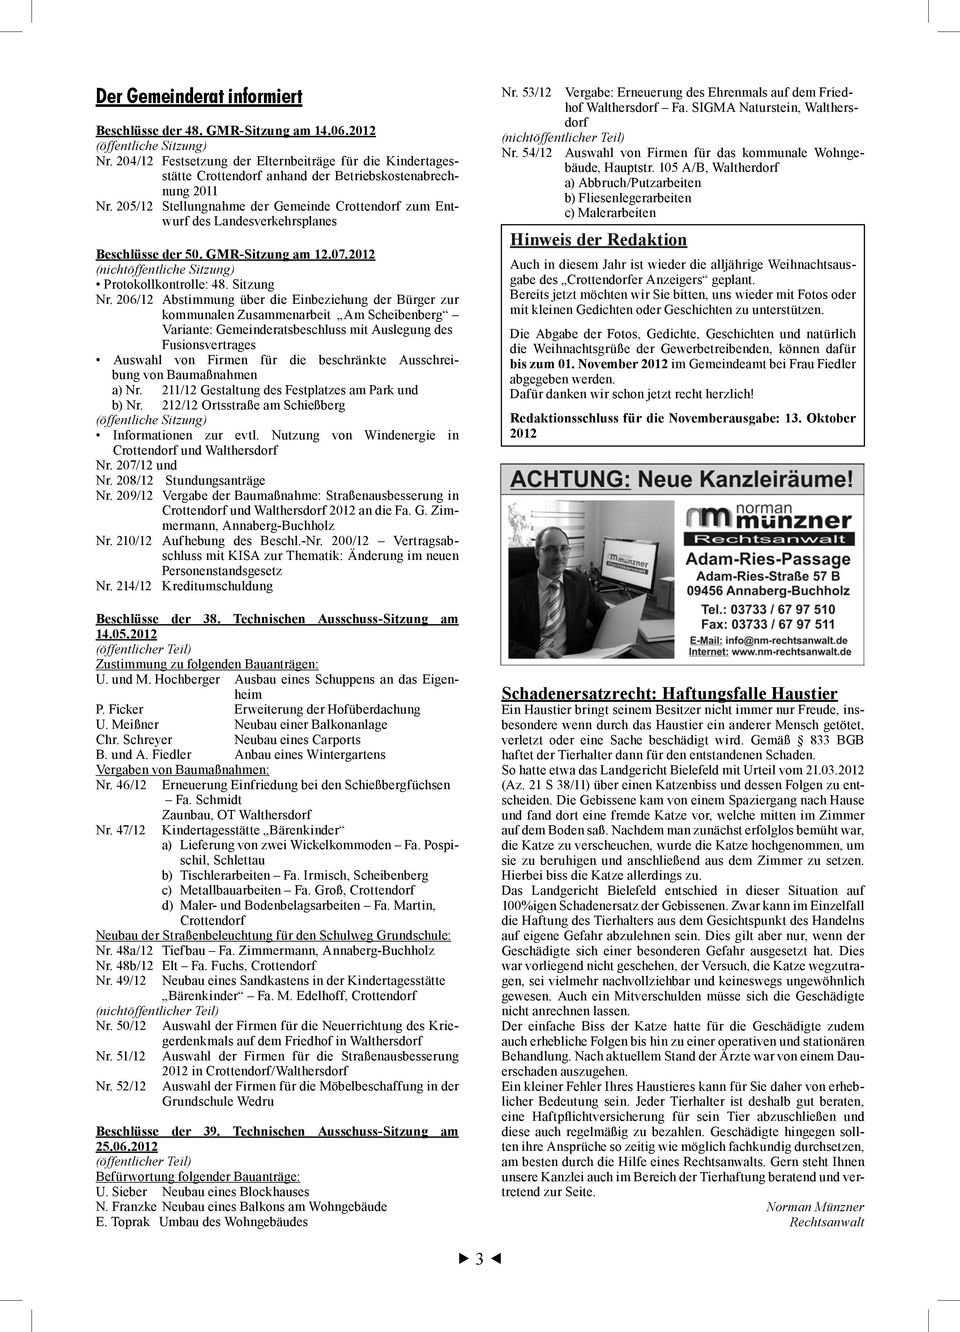 205/12 Stellungnahme der Gemeinde Crottendorf zum Entwurf de Landeverkehrplane Bechlüe der 50. GMR-Sitzung am 12.07.2012 (nichtöffentliche Sitzung) Protokollkontrolle: 48. Sitzung Nr.